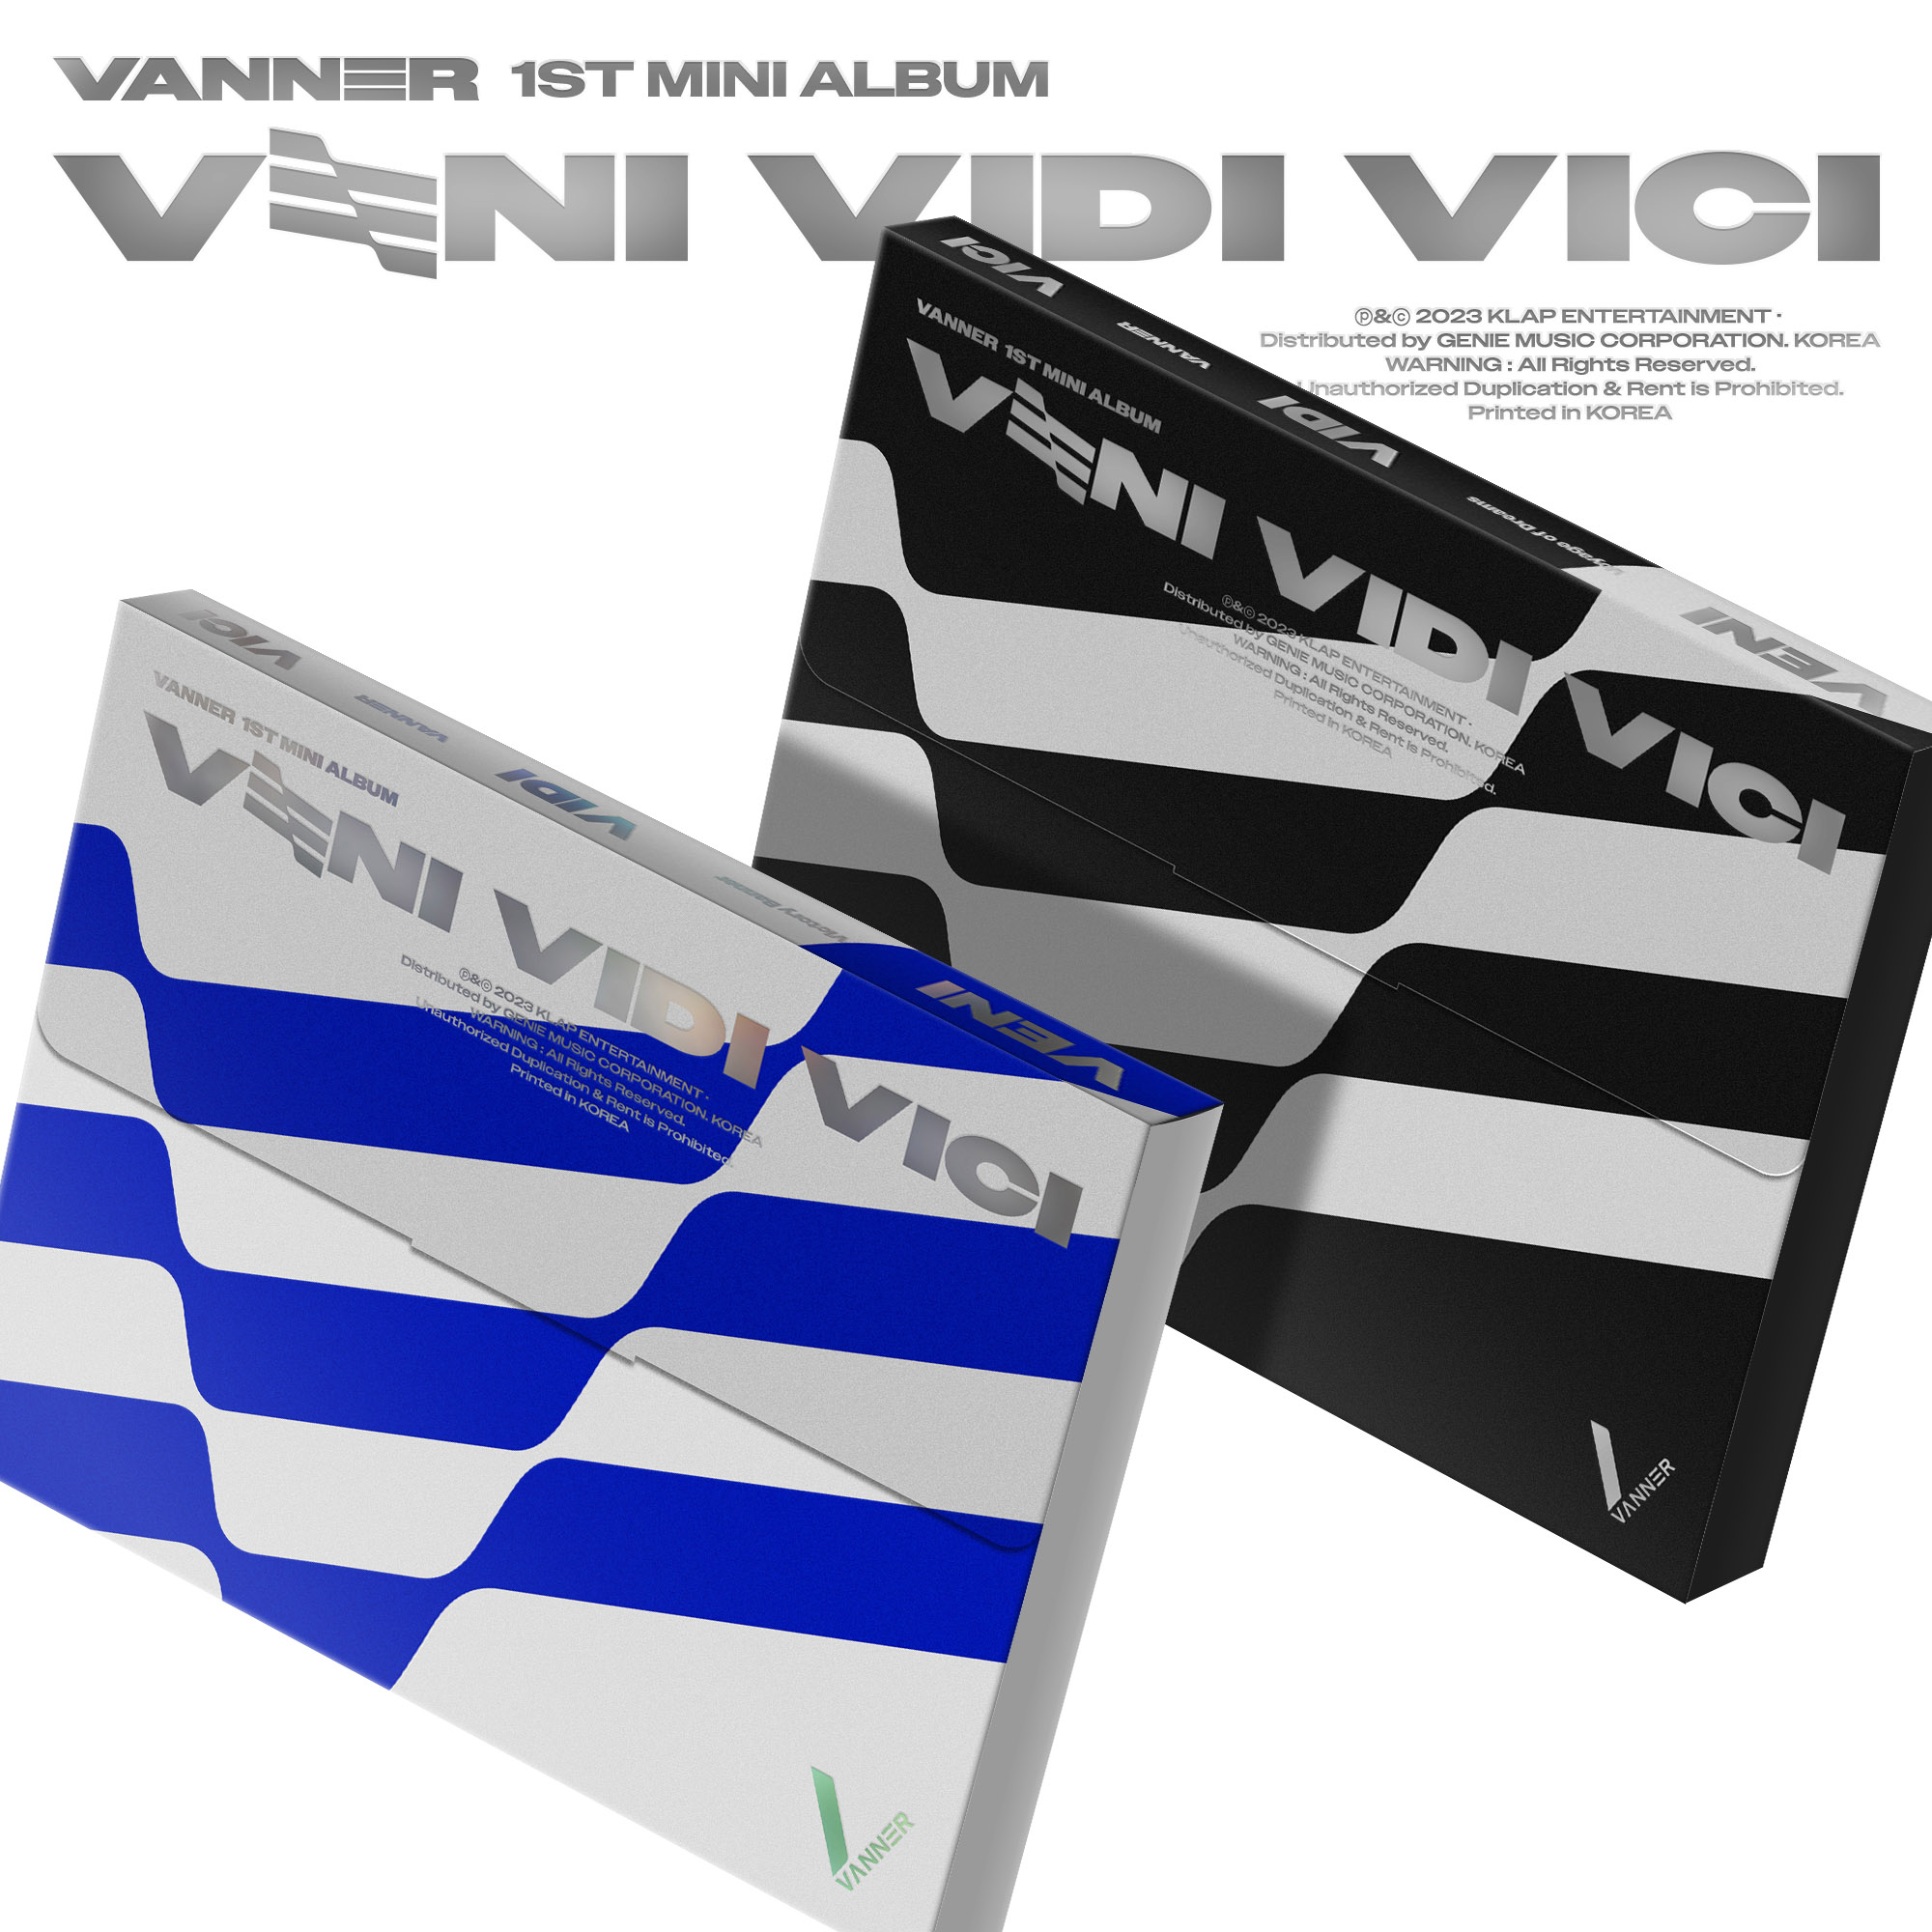 [全款 裸专] [Ktown4u Special Gift] [2CD 套装] VANNER - 迷你1辑 [VENI VIDI VICI] (Victory Banner Ver. + Voyage of Dreams Ver.)_VANNER个站联盟